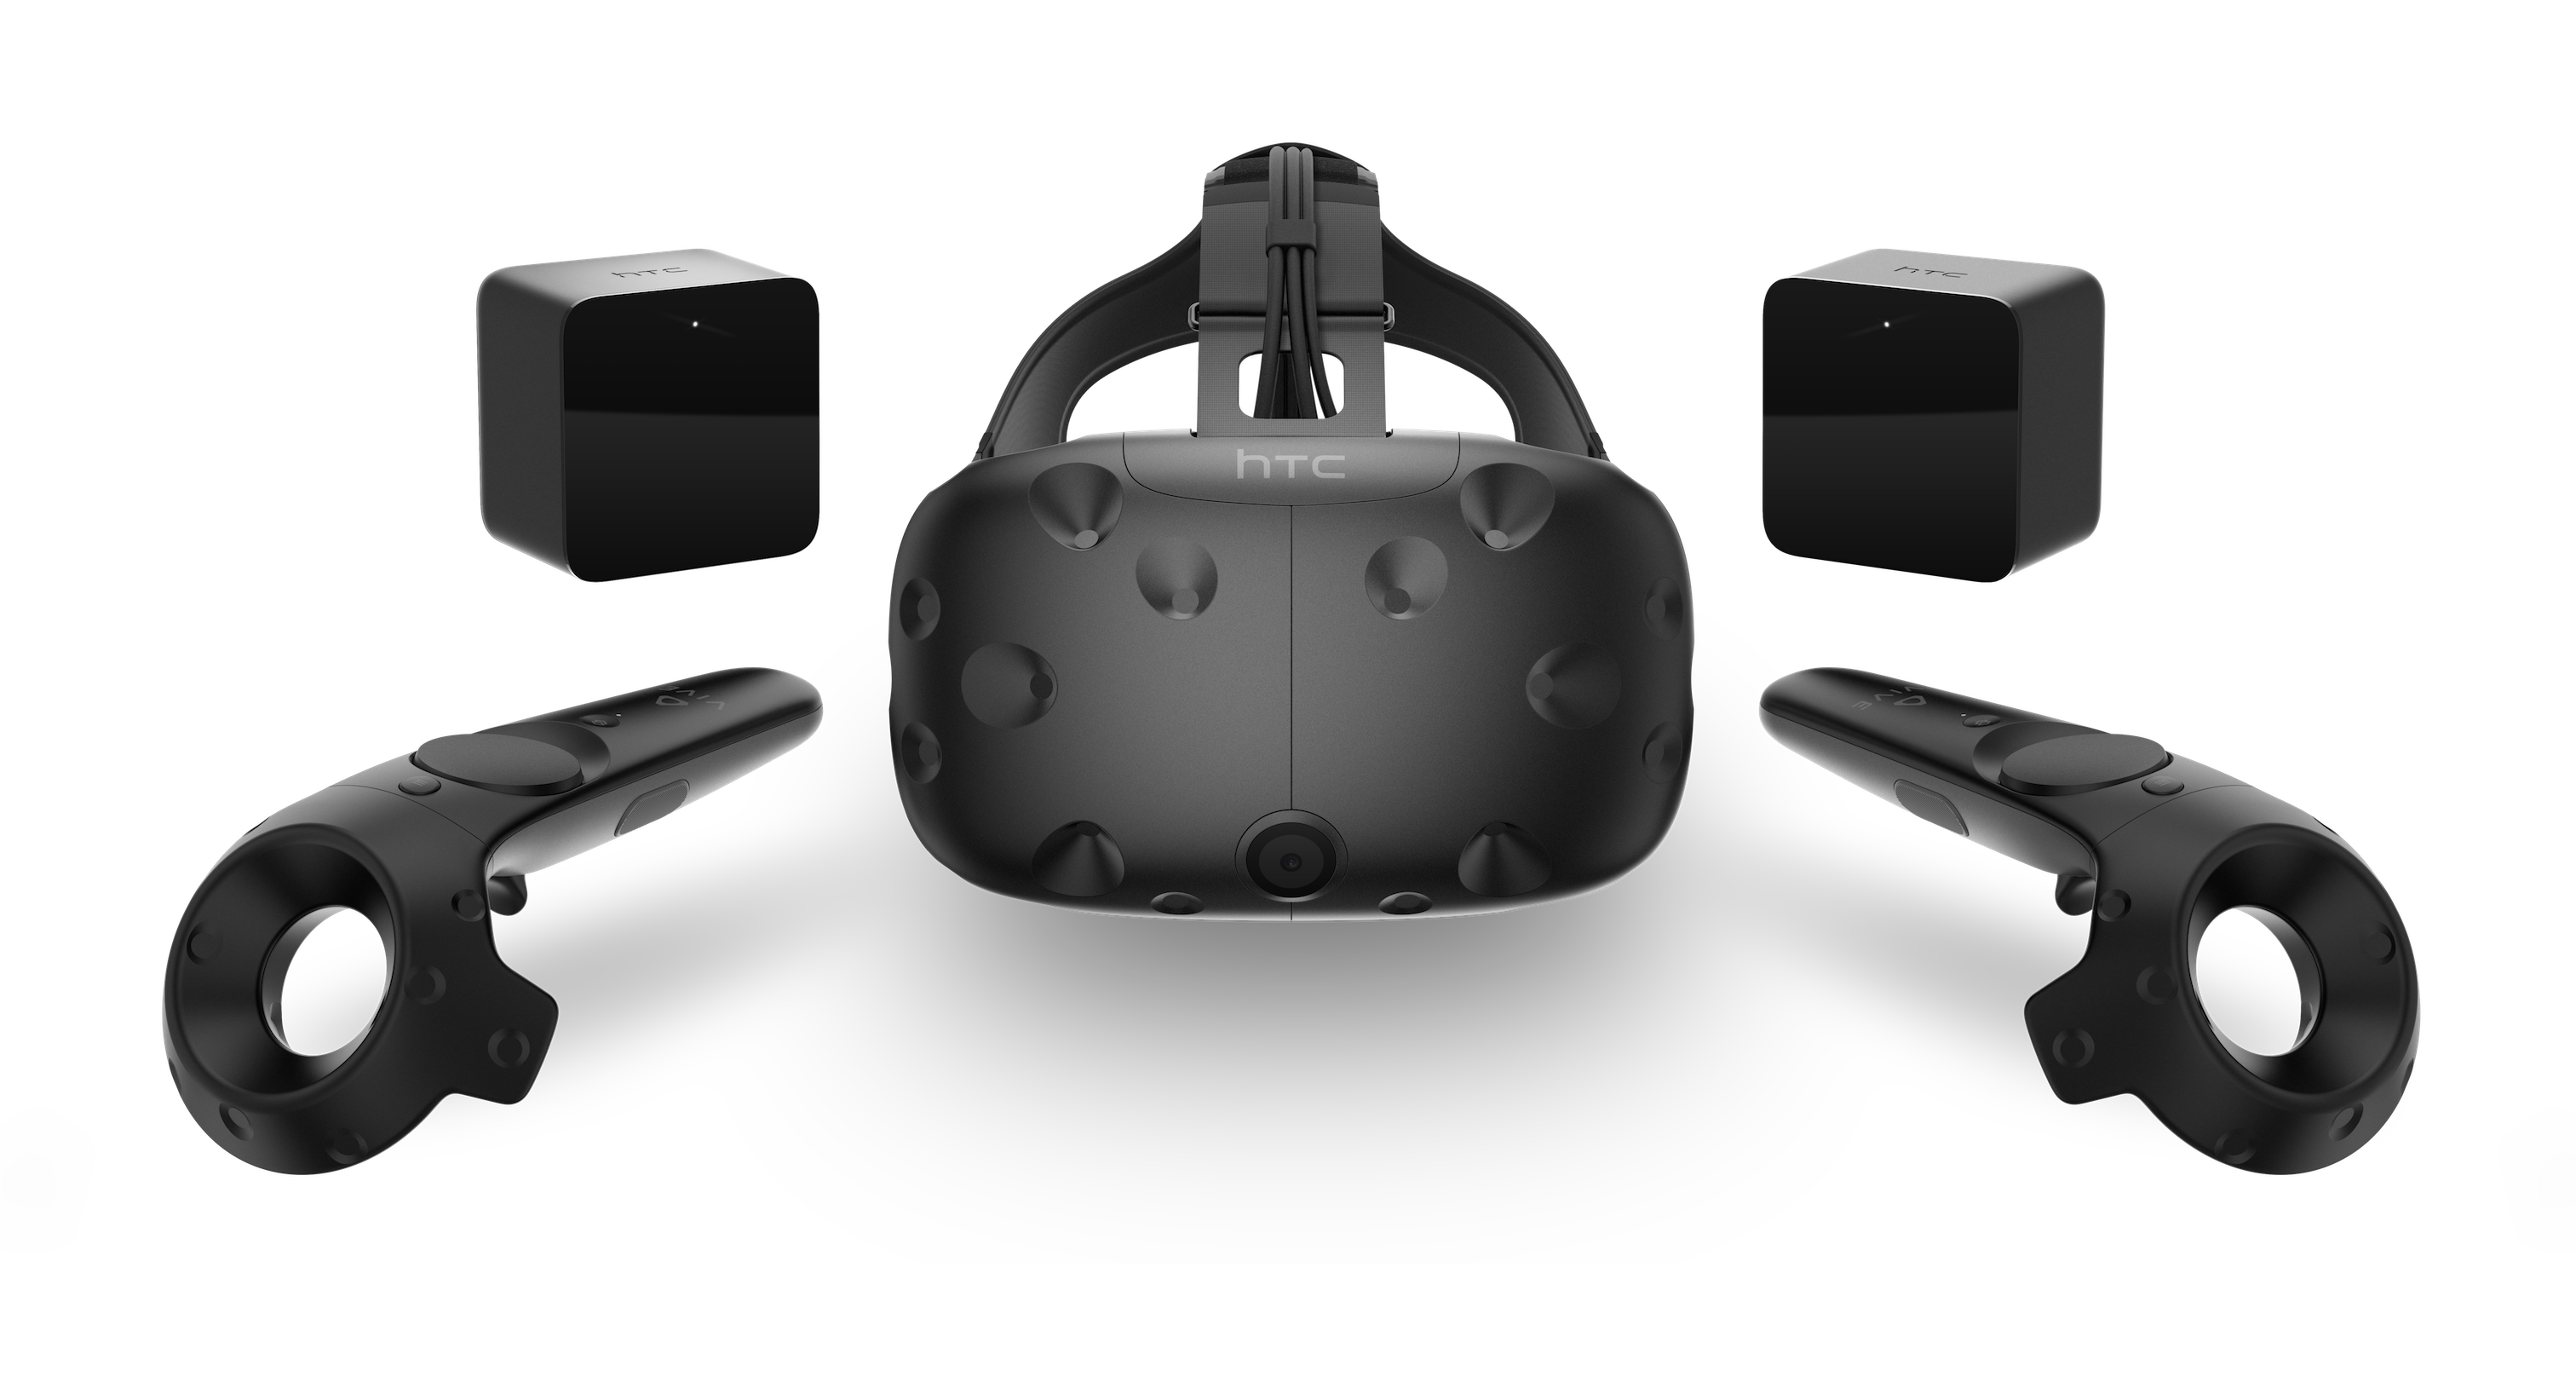 Immagine pubblicata in relazione al seguente contenuto: HTC annuncia il prezzo e il periodo di lancio dell'headset VR Vive | Nome immagine: news23831_Vive-Virtual-Reality-System_1.png